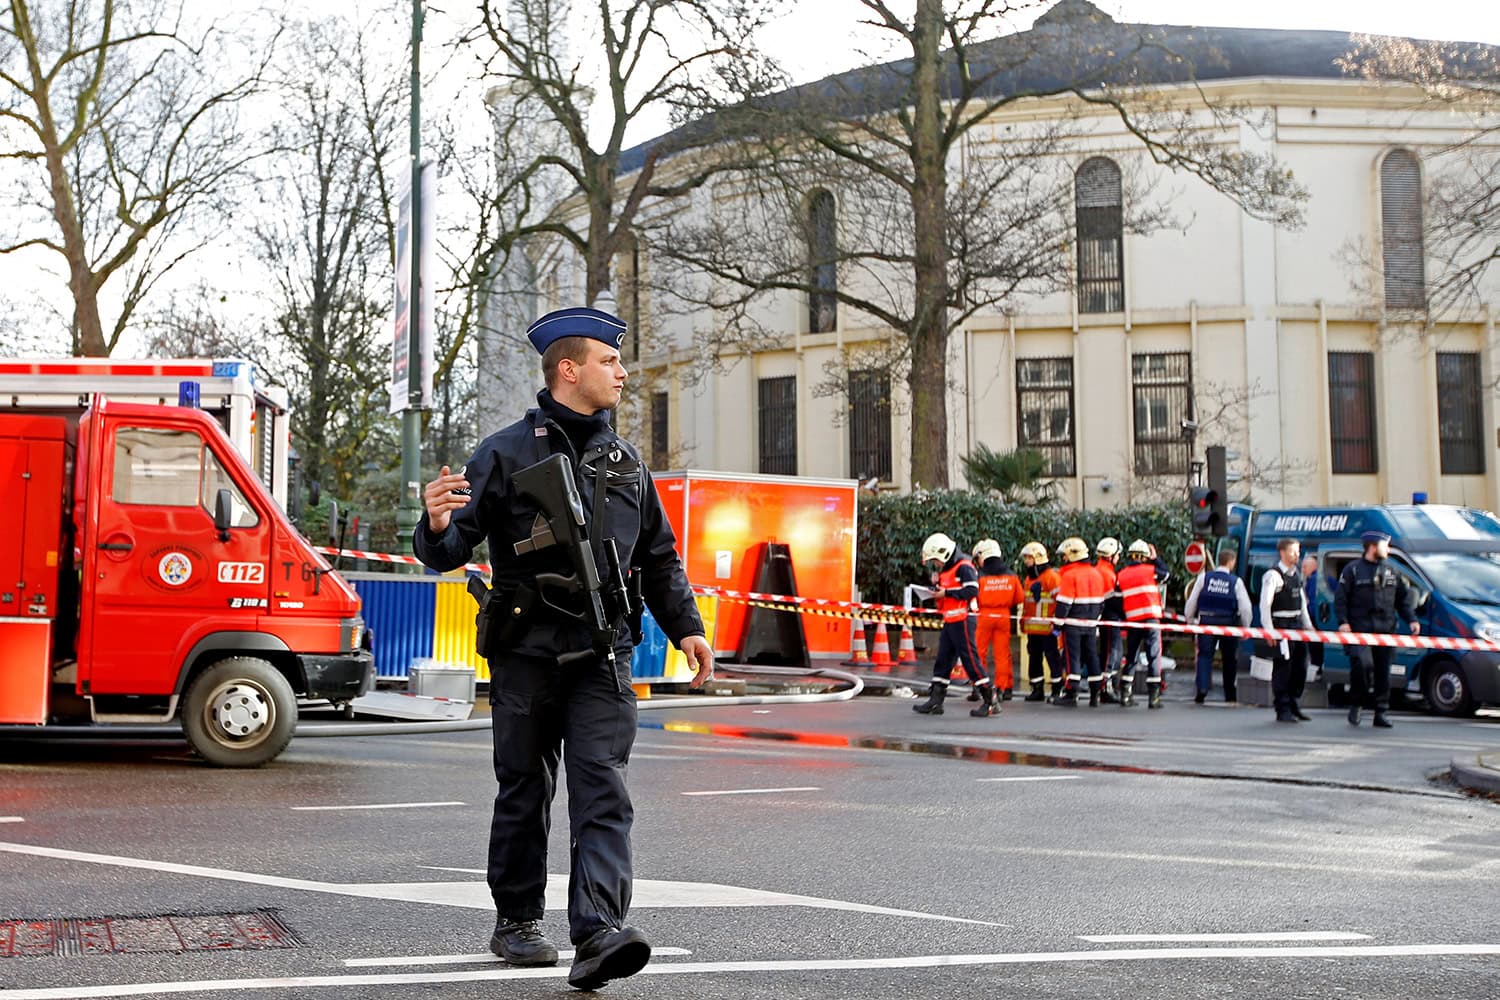 Los sobres sospechosos que obligaron a desalojar la Gran Mezquita de Bruselas eran sólo harina